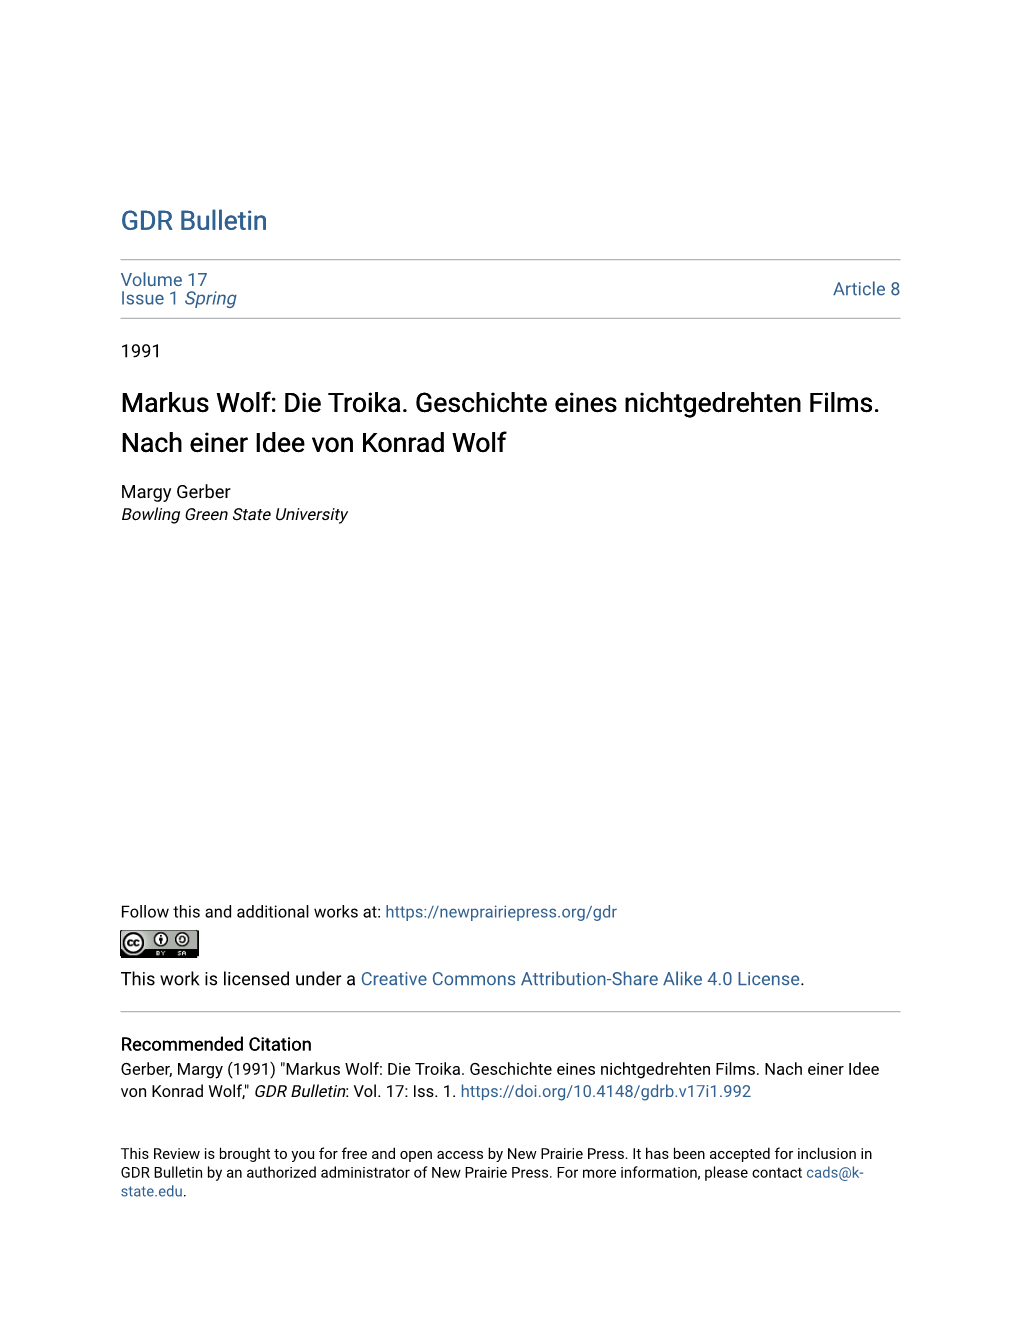 Markus Wolf: Die Troika. Geschichte Eines Nichtgedrehten Films. Nach Einer Idee Von Konrad Wolf